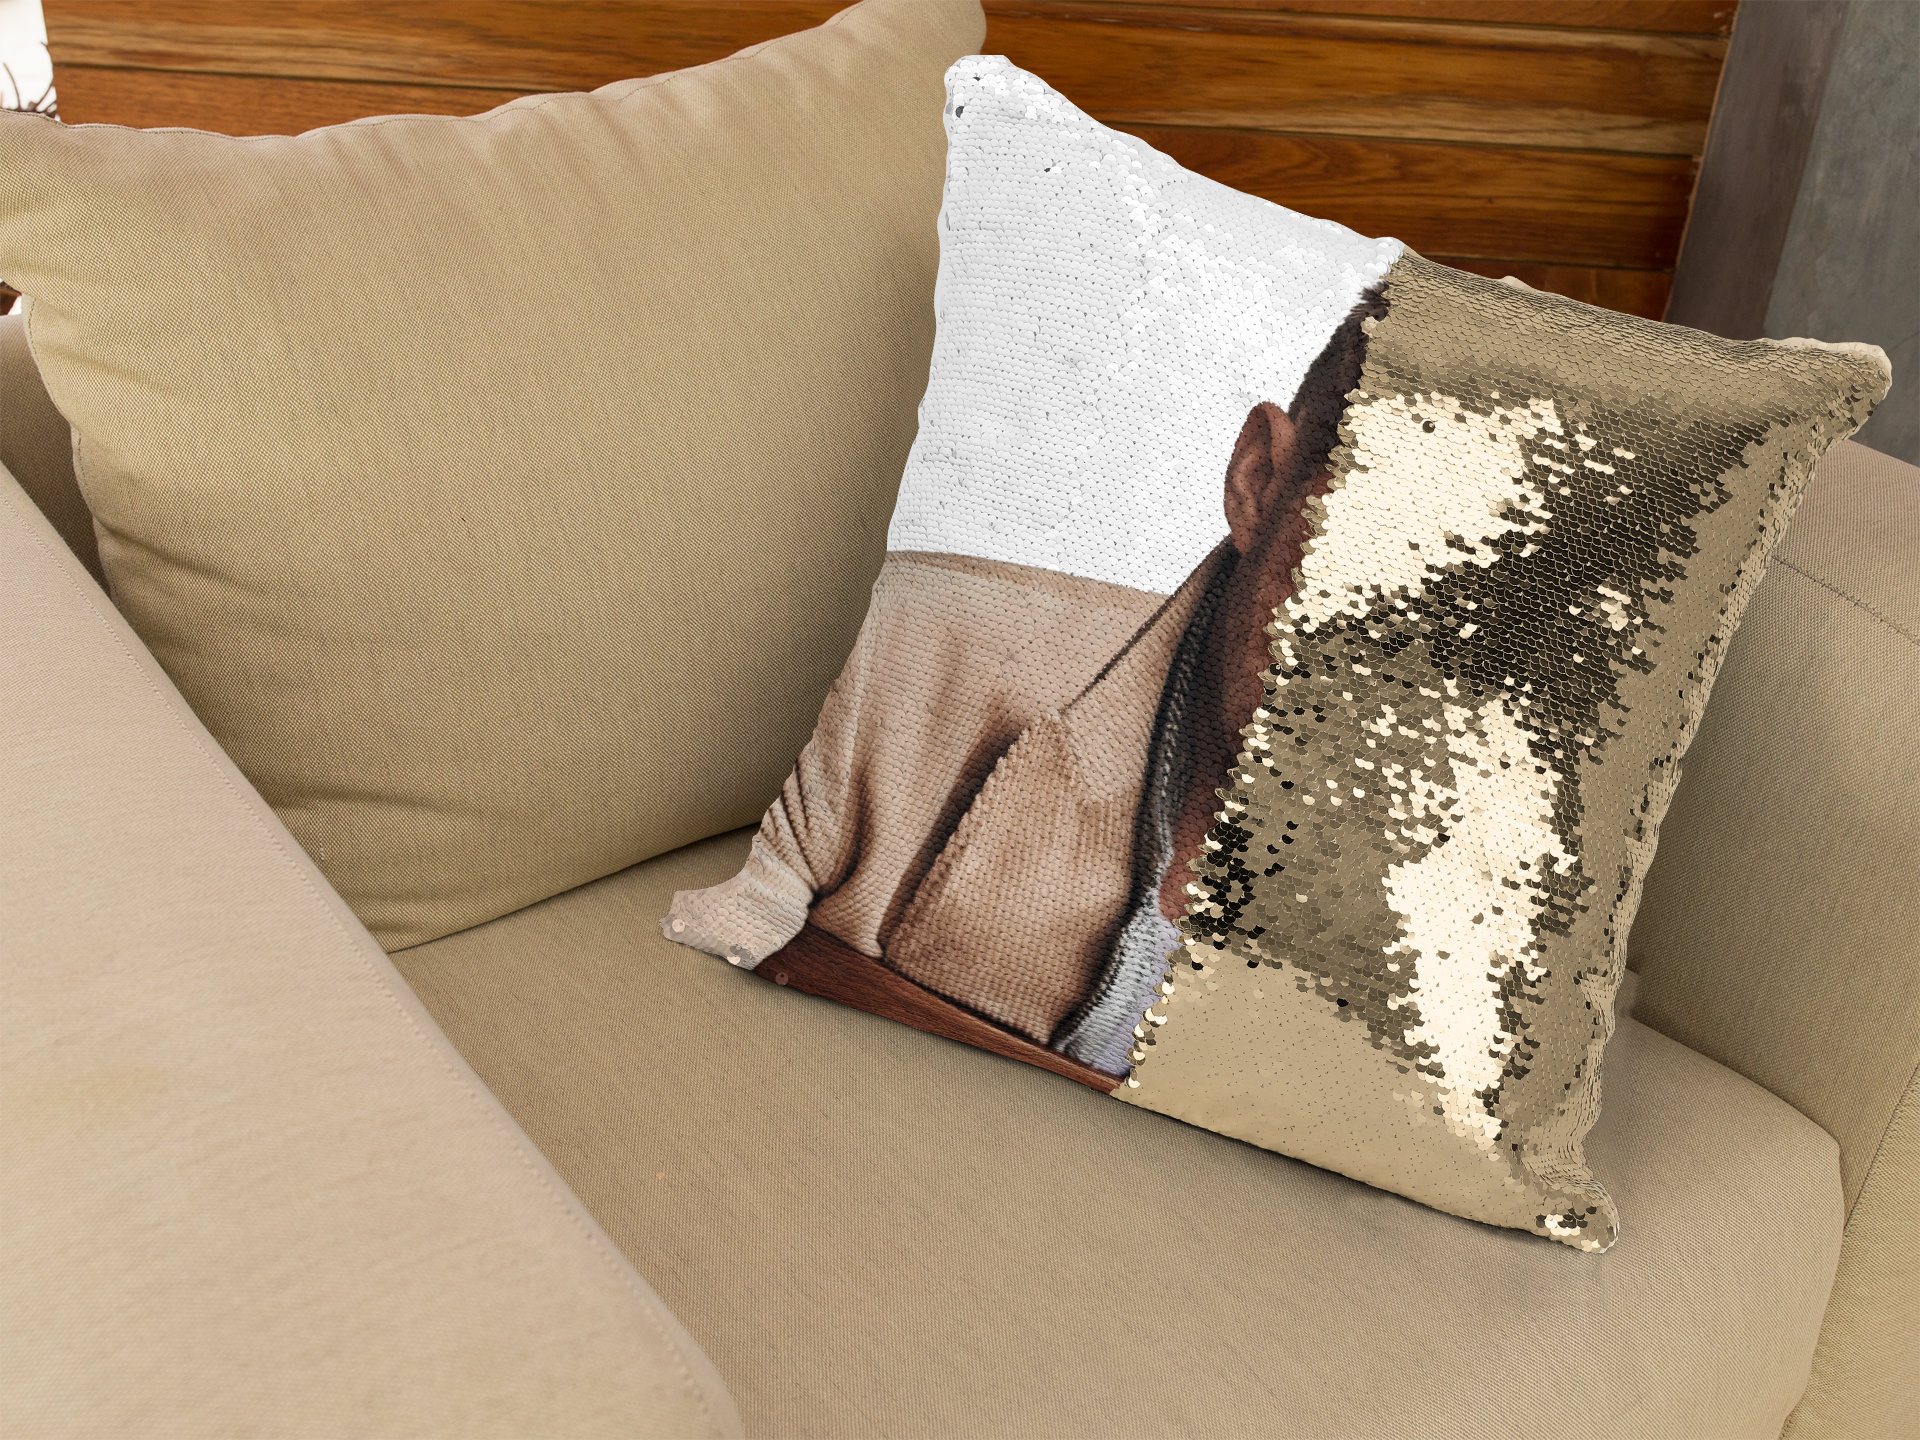 Shuakara Hey Girl Ryan Gosling Pillow Case Pillowcase Home Decor Throw  Pillow Cover 16×16 : : Home